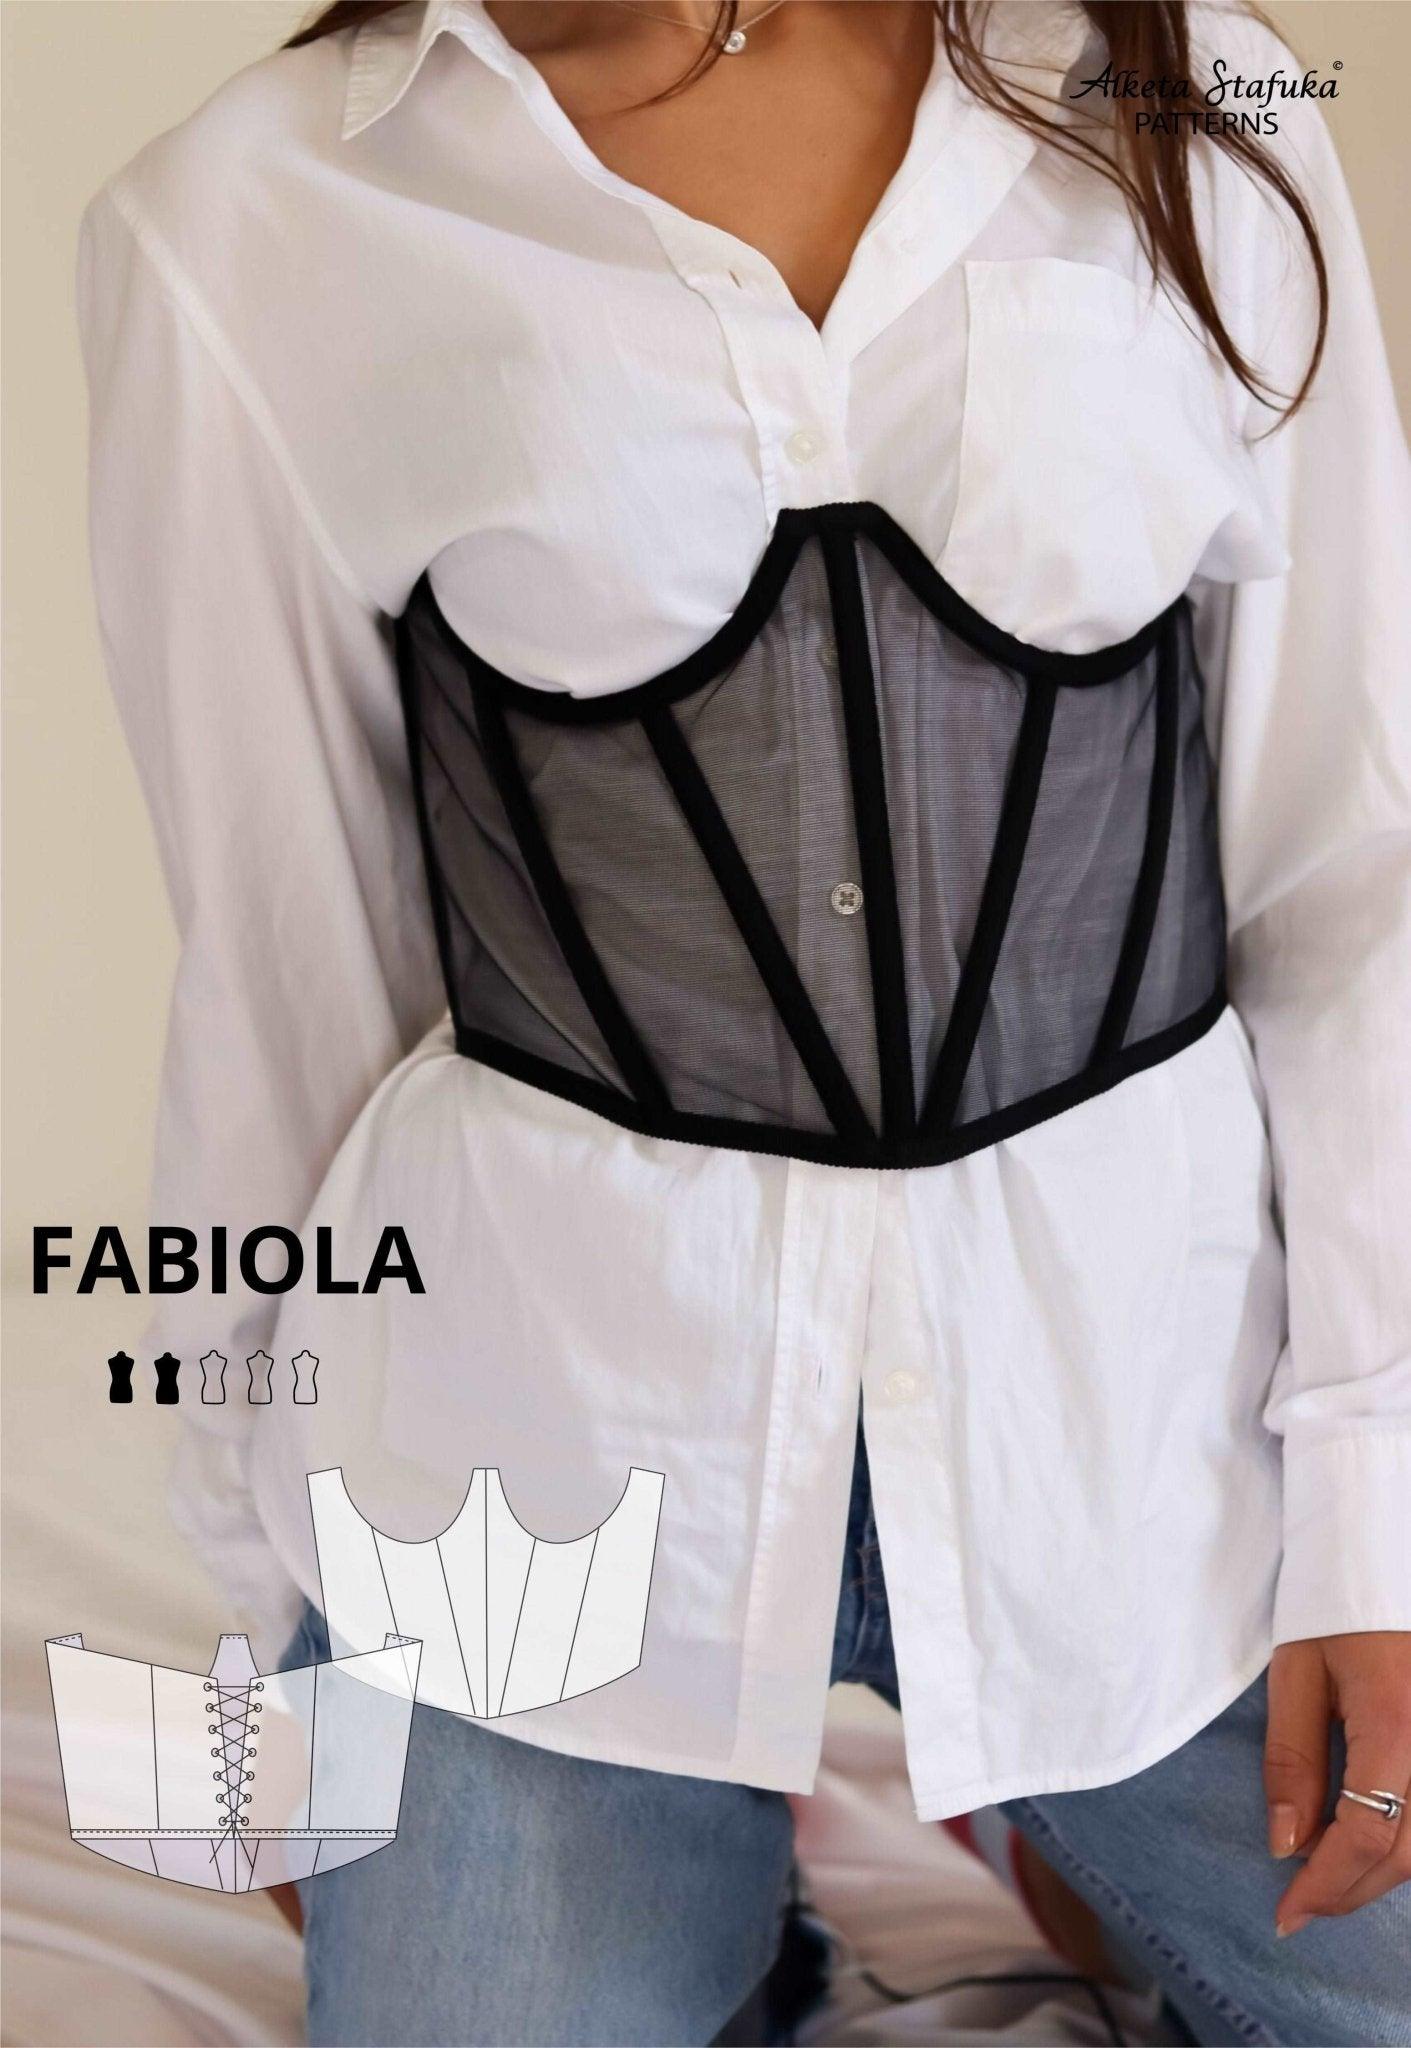 http://alketastafukapatterns.com/cdn/shop/products/fabiola-underbust-corset-sewing-pattern-alketastafukapatterns-1.jpg?v=1705400638